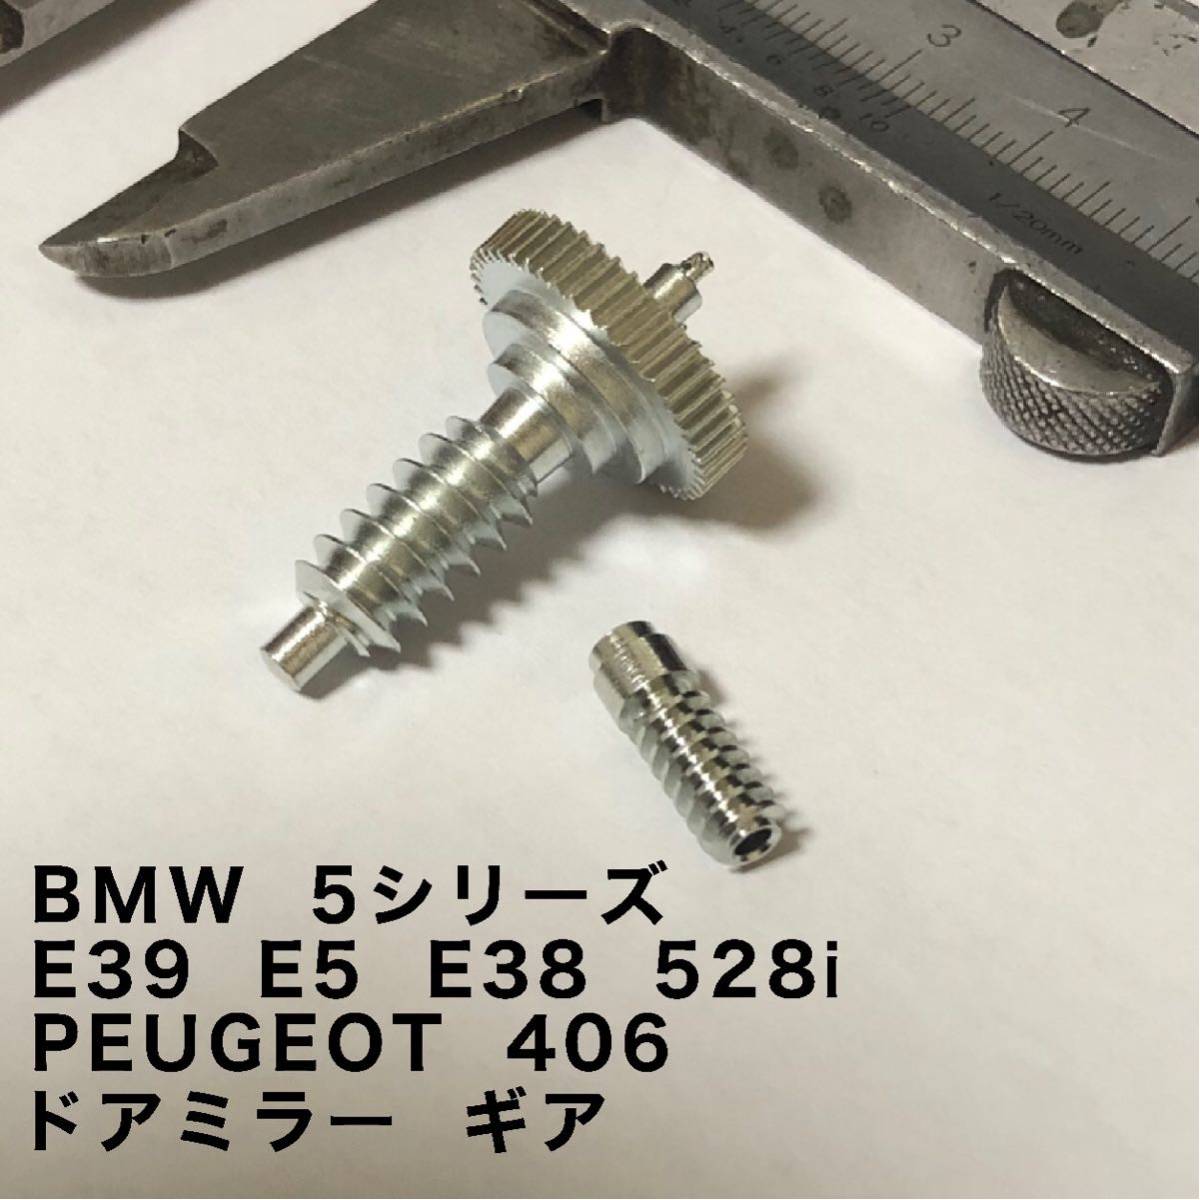 45歯 BMW 5シリーズ E39 E5 E38 528i金属製ドアミラー ギア プジョー PEUGEOT 406 1個